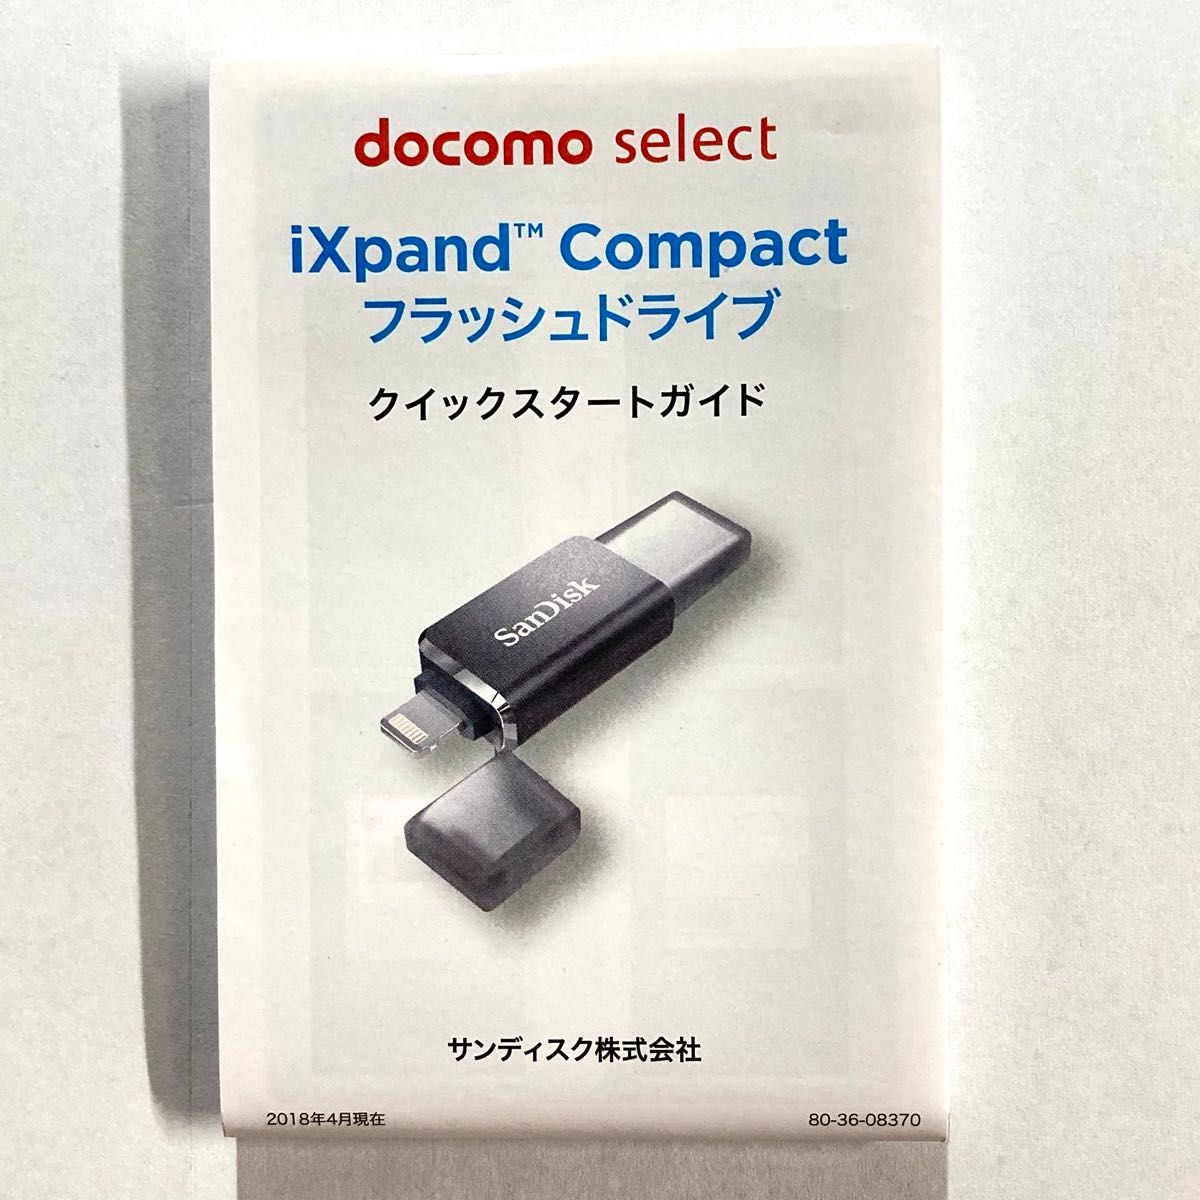 ★ 32GB iXpand Flip フラッシュドライブ  SanDisk サンディスク SDIX50N-032G ★ 中古 ★